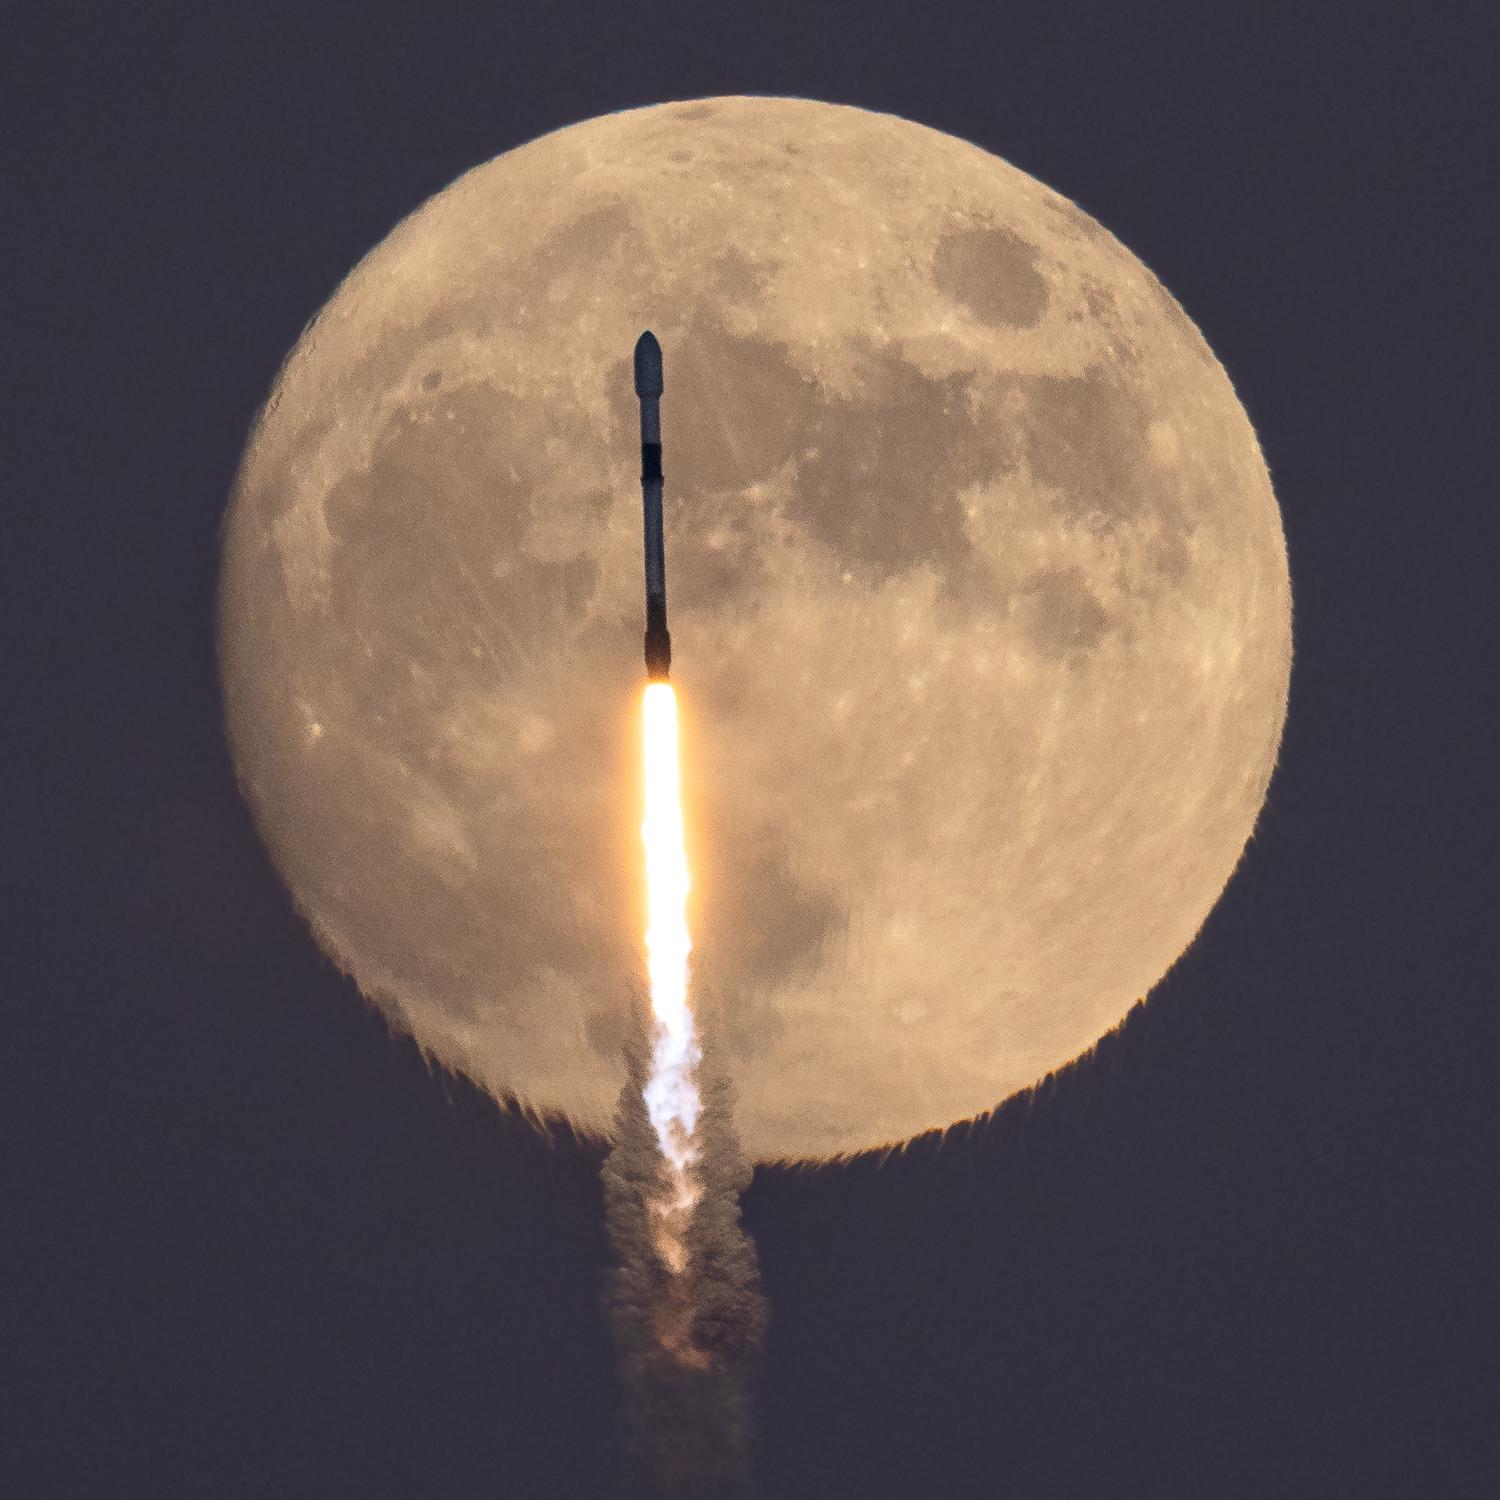 قرص قمرٍ مكتمل تقريباً يعبر أمامه صاروخ فالكون وخلفه نيران وأدخنة